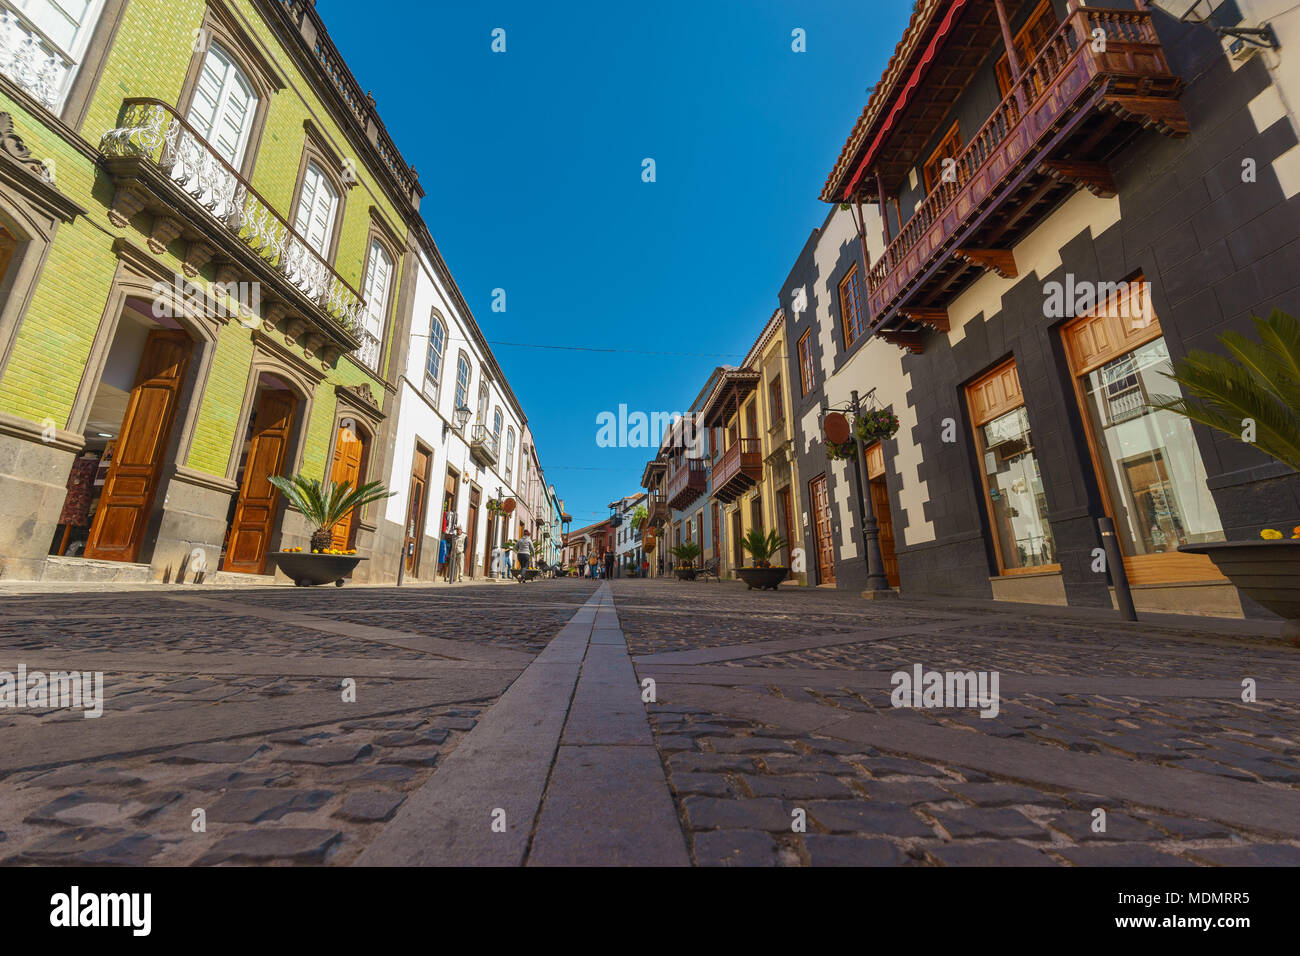 Teror, España - 27 de febrero de 2018: Calle Real de la Plaza, la calle principal peatonal con arquitectura tradicional canaria y coloridas fachadas. Foto de stock